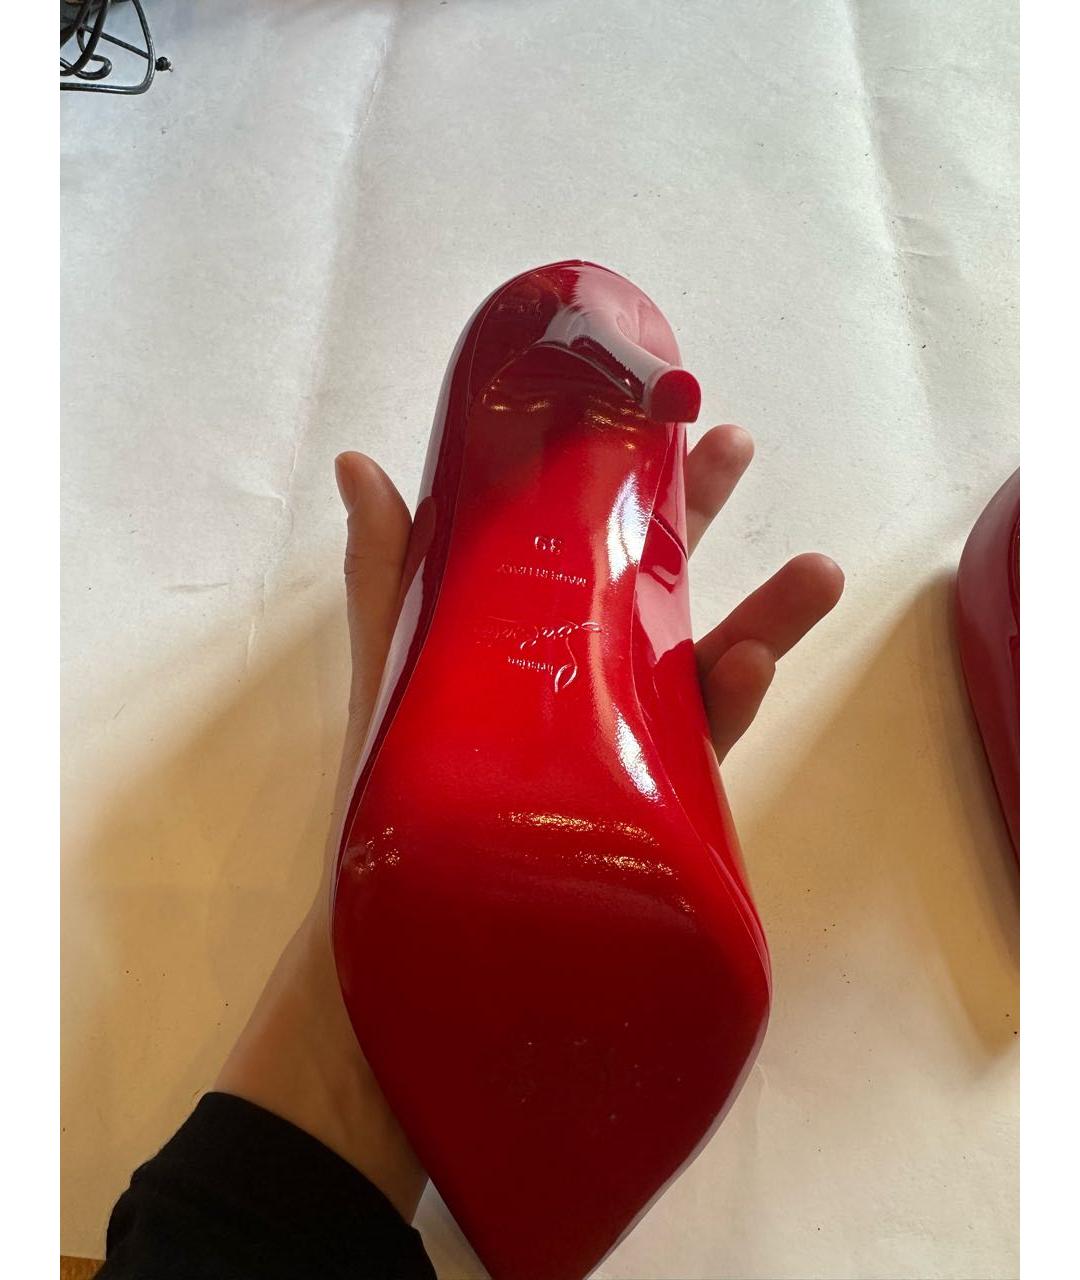 CHRISTIAN LOUBOUTIN Красные туфли из лакированной кожи, фото 2